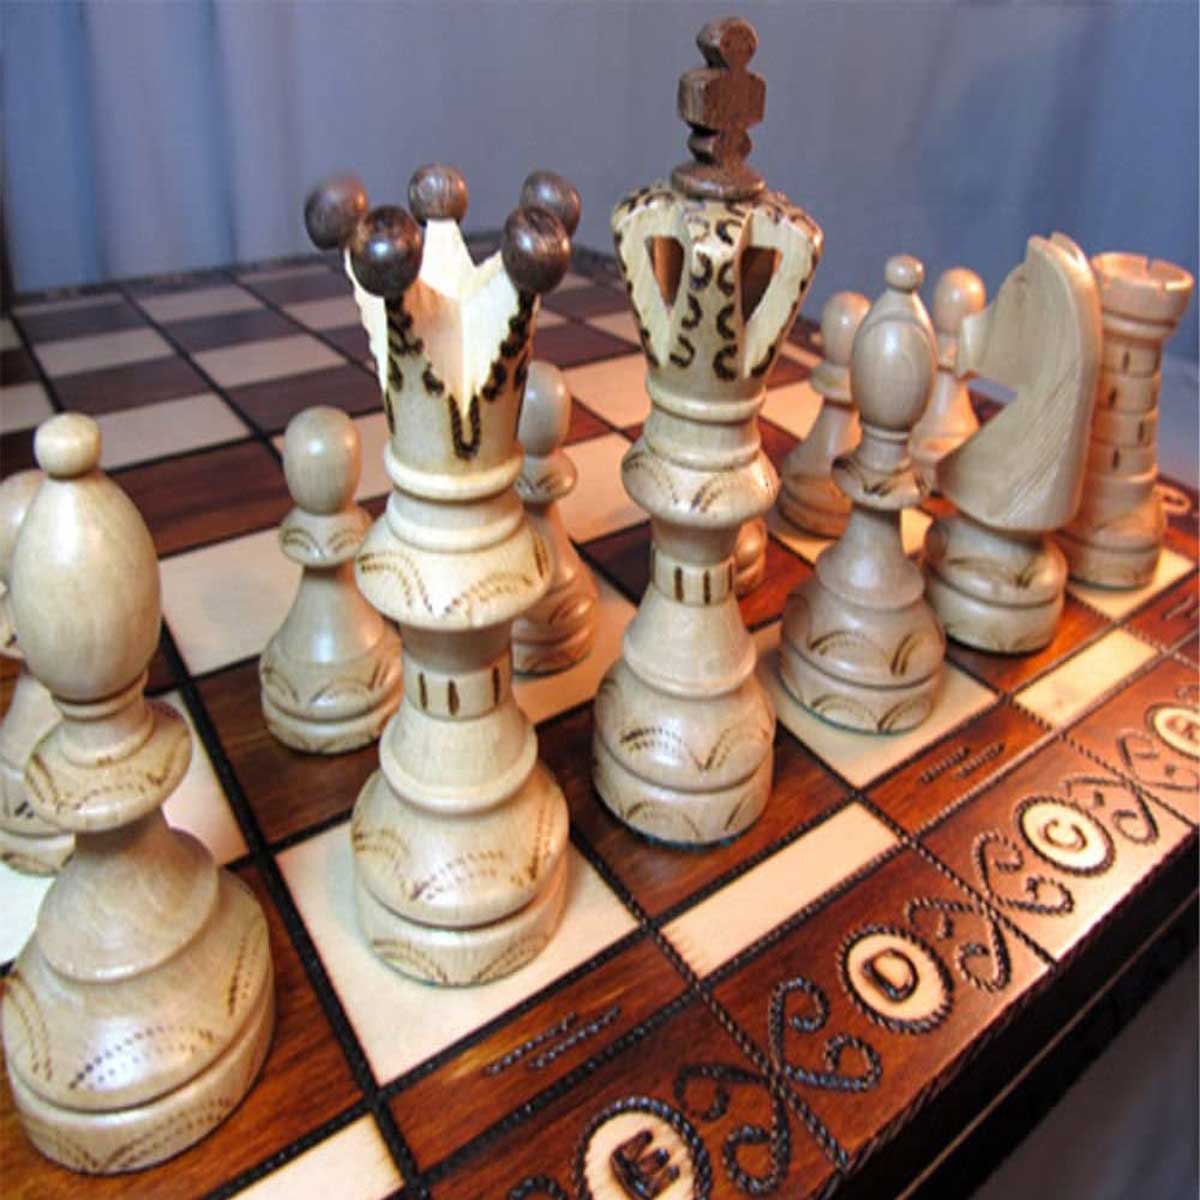 Juego de ajedrez en madera